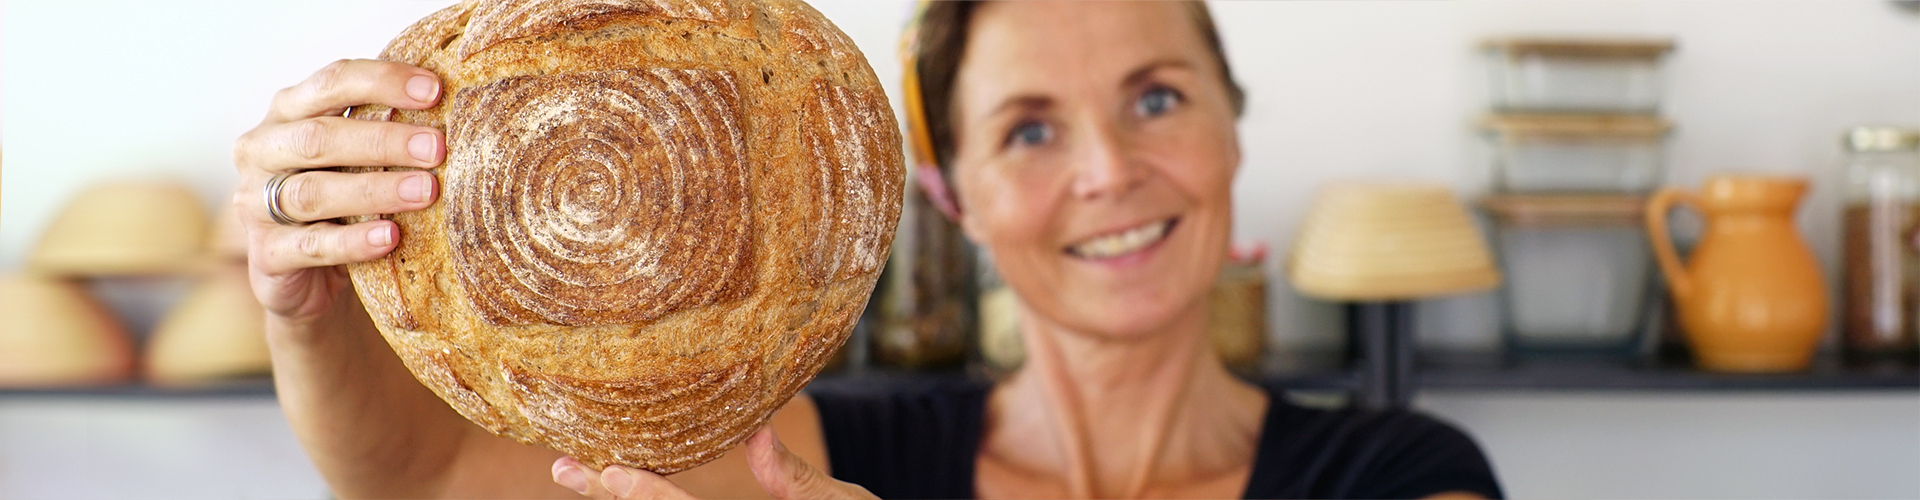 Zelf brood bakken - Marije Bakt Brood lacht met ambachtelijk brood voor zich uit gestoken in bakkers keuken met potjes